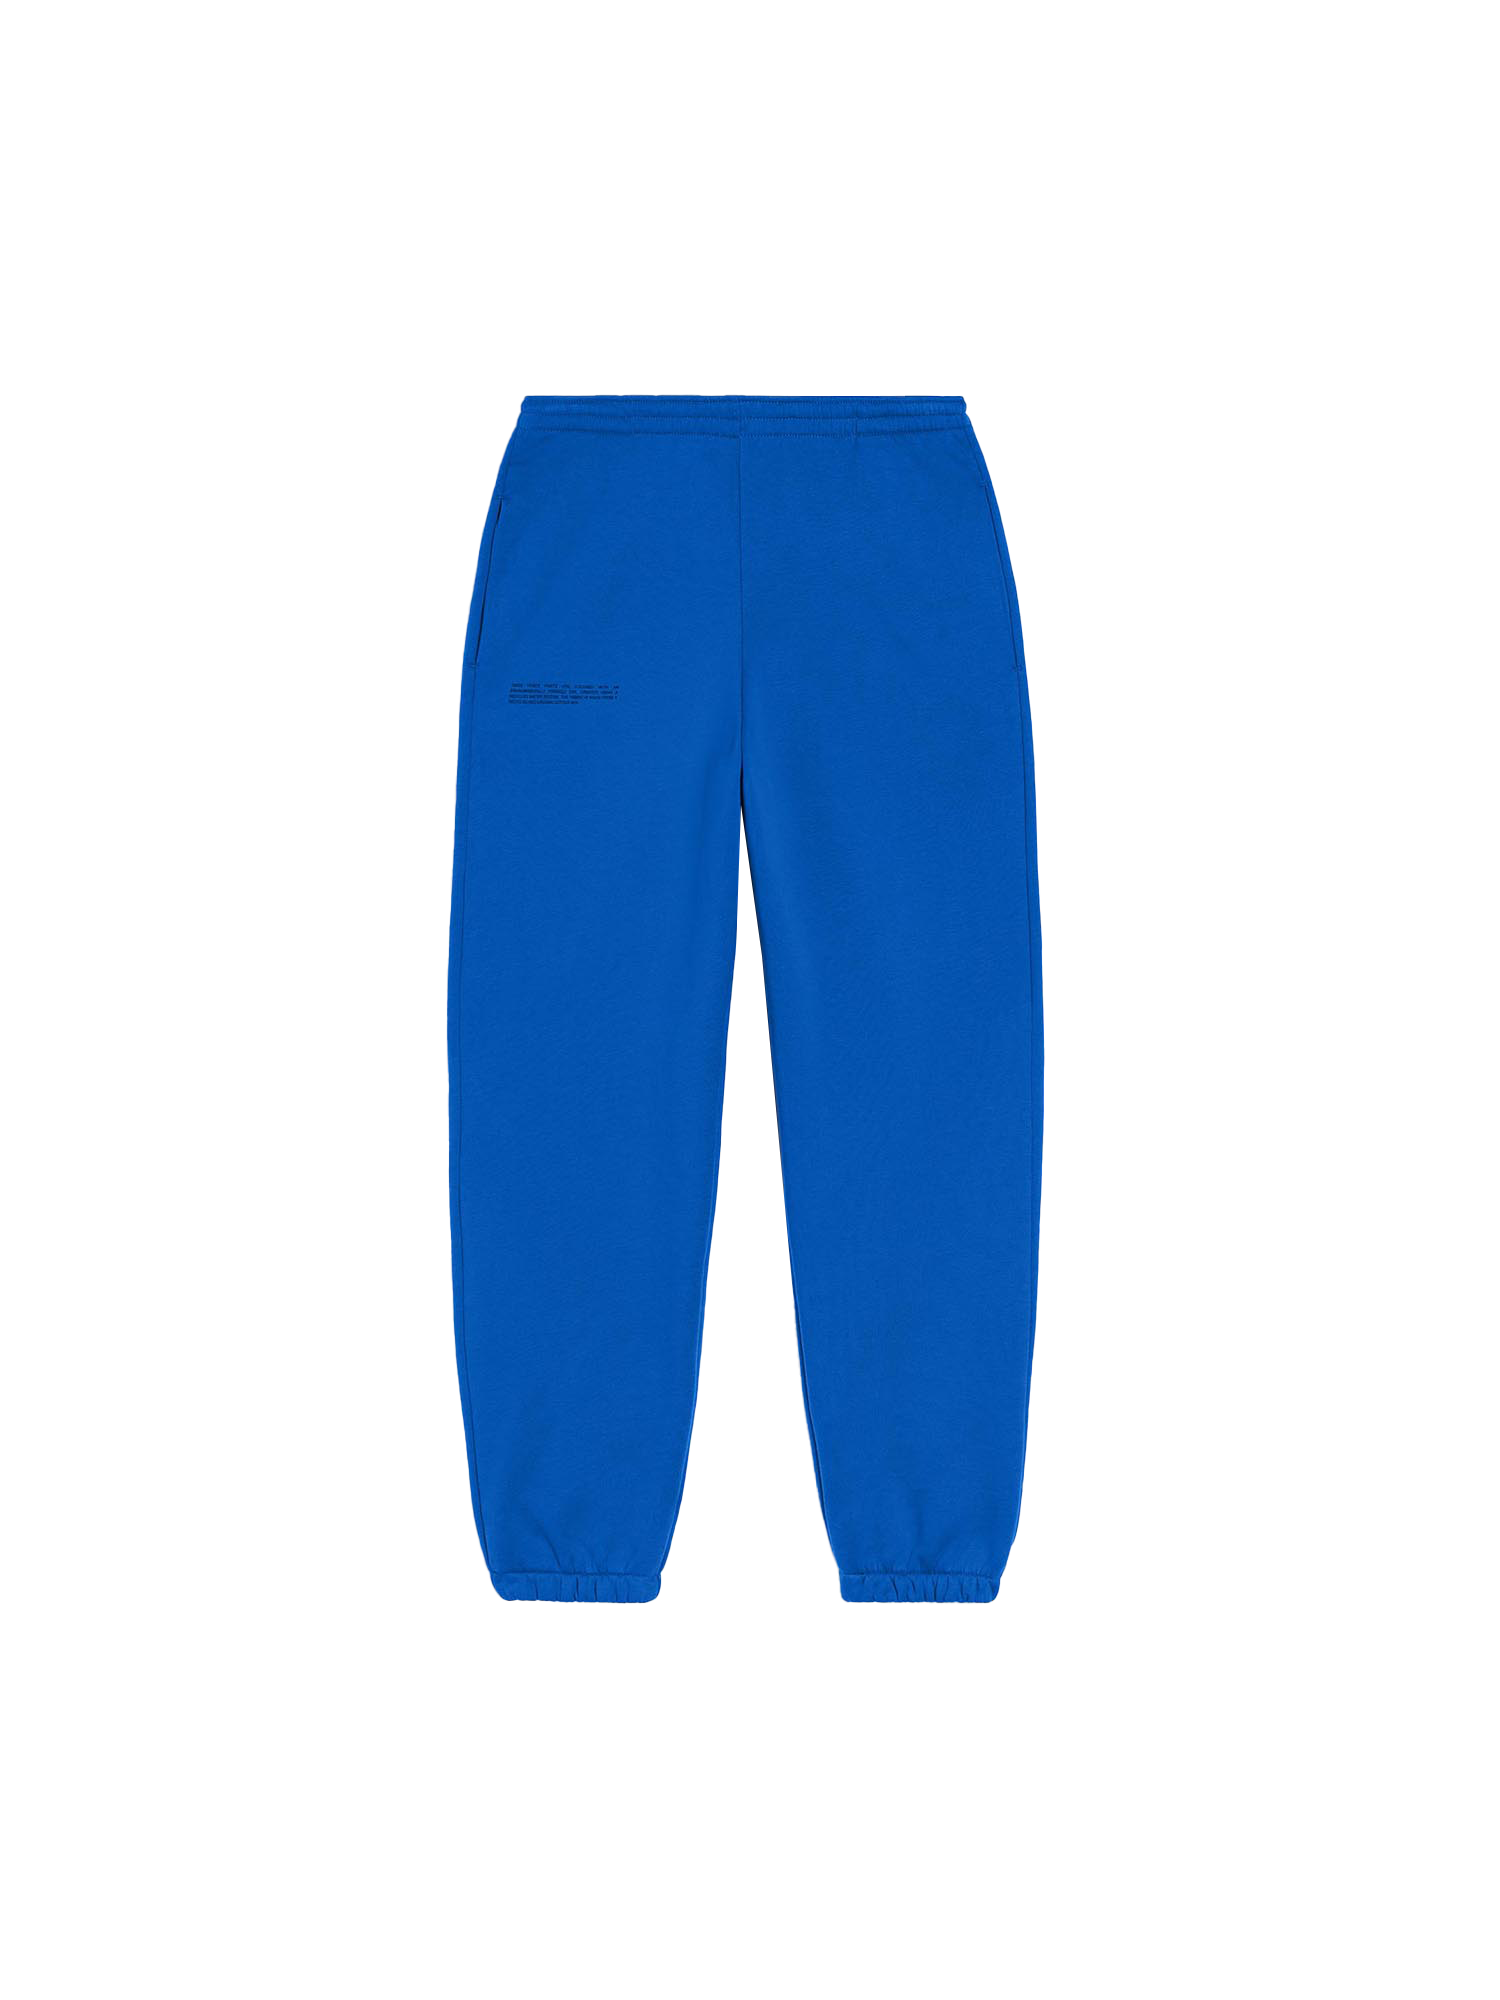 365 Signature Track Pants - Cobalt Blue - Pangaia